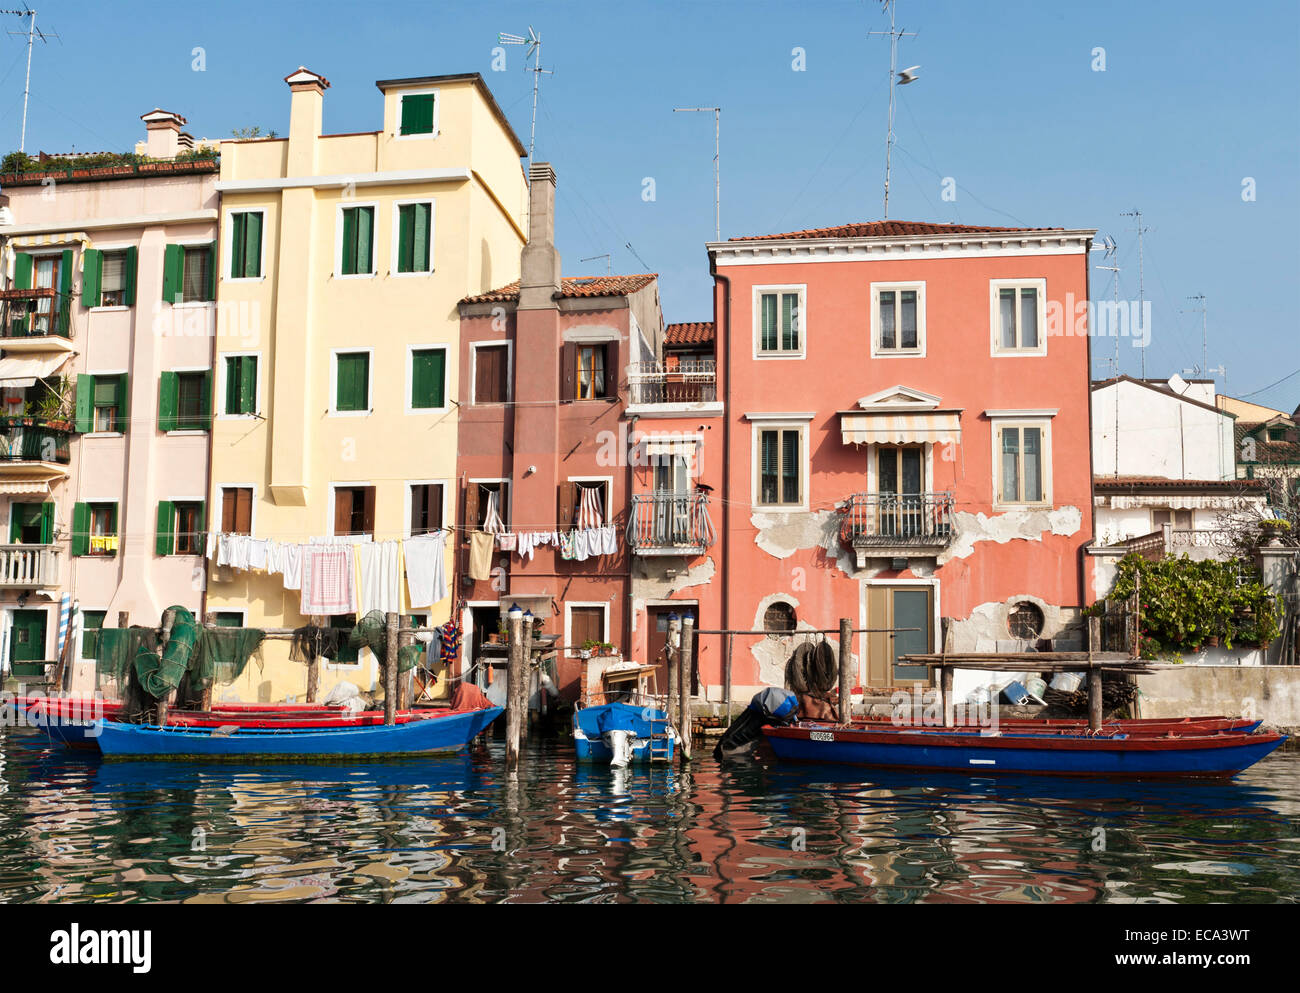 Case e barche da pesca sul canale di vena, Chioggia, Veneto, Italia Foto Stock